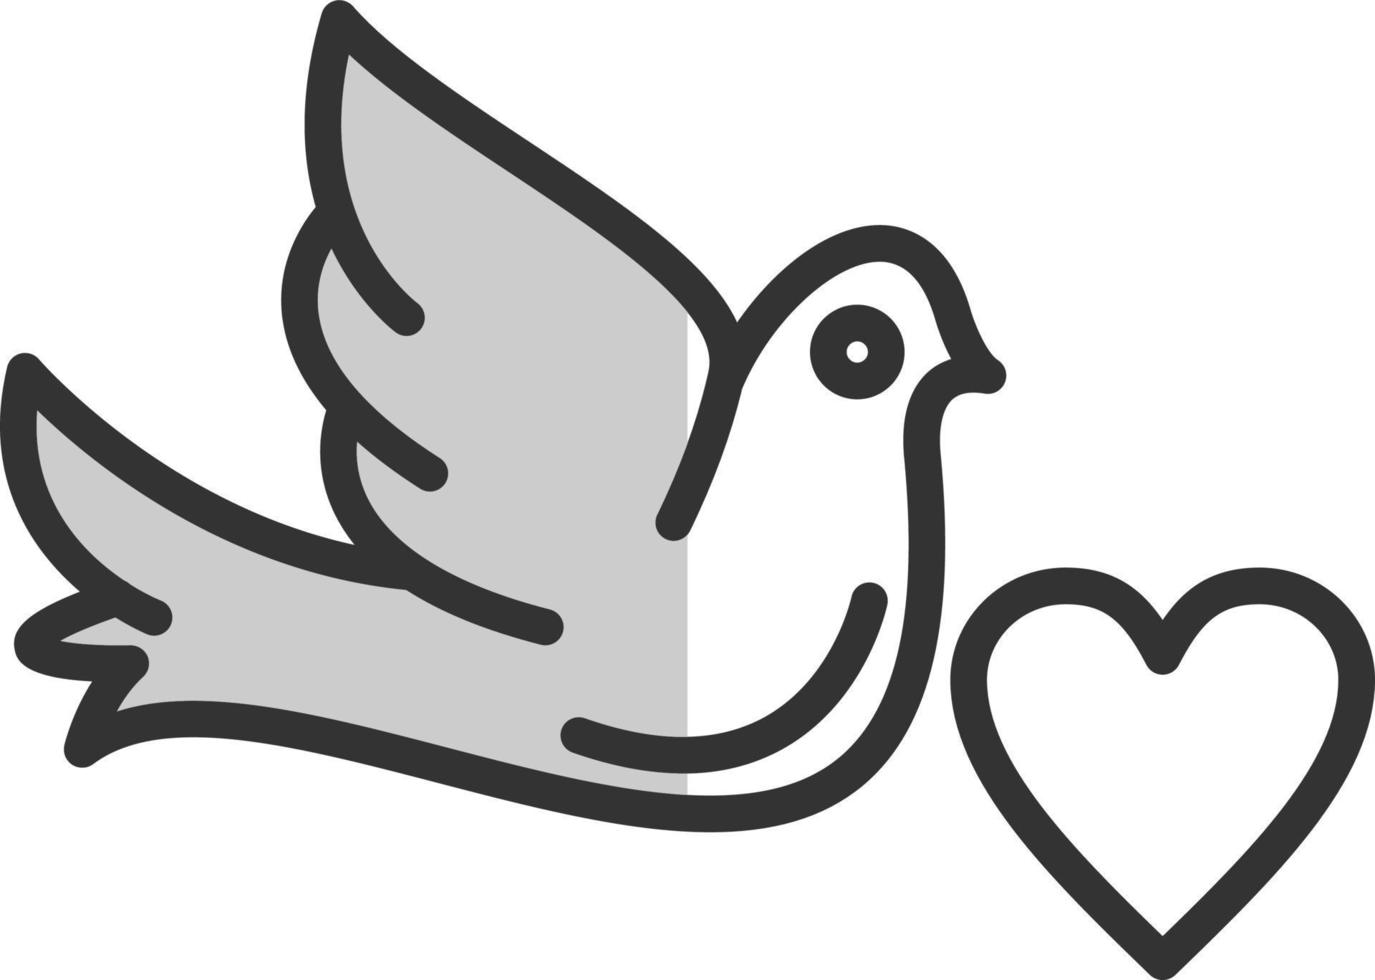 colombe avec conception d'icône de vecteur de coeur